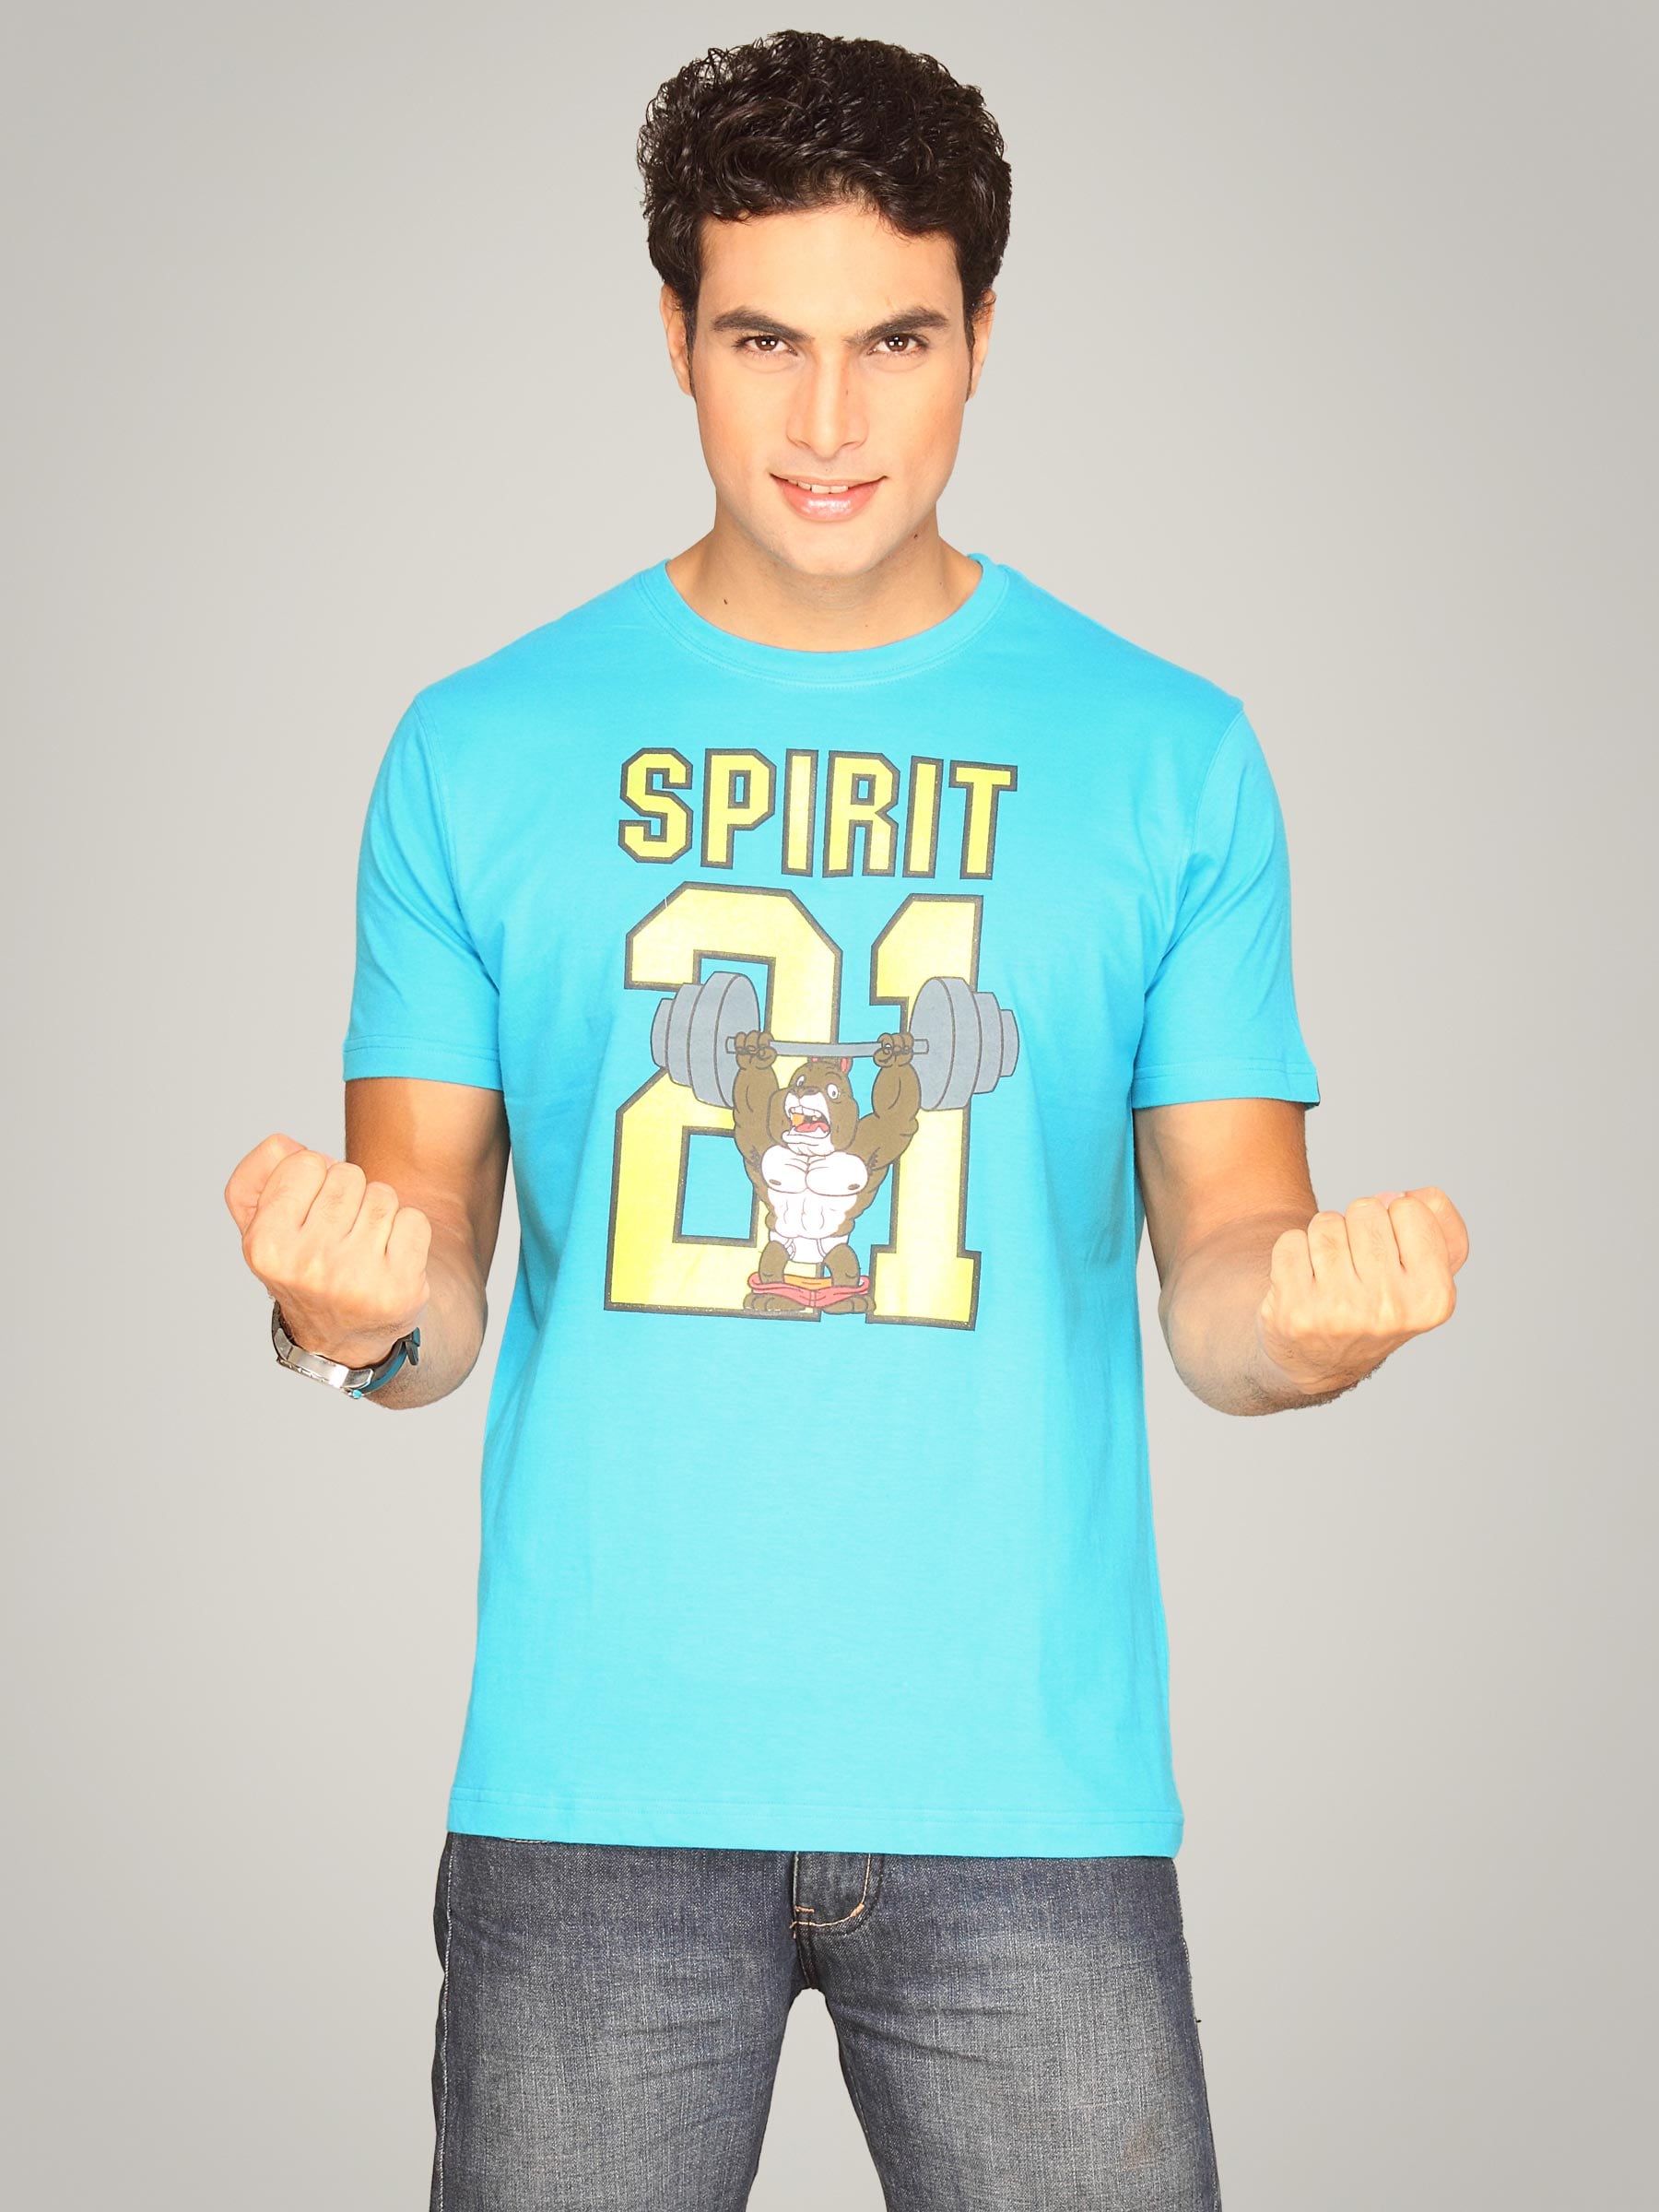 Probase Men's Spirit Aqua Blue T-shirt